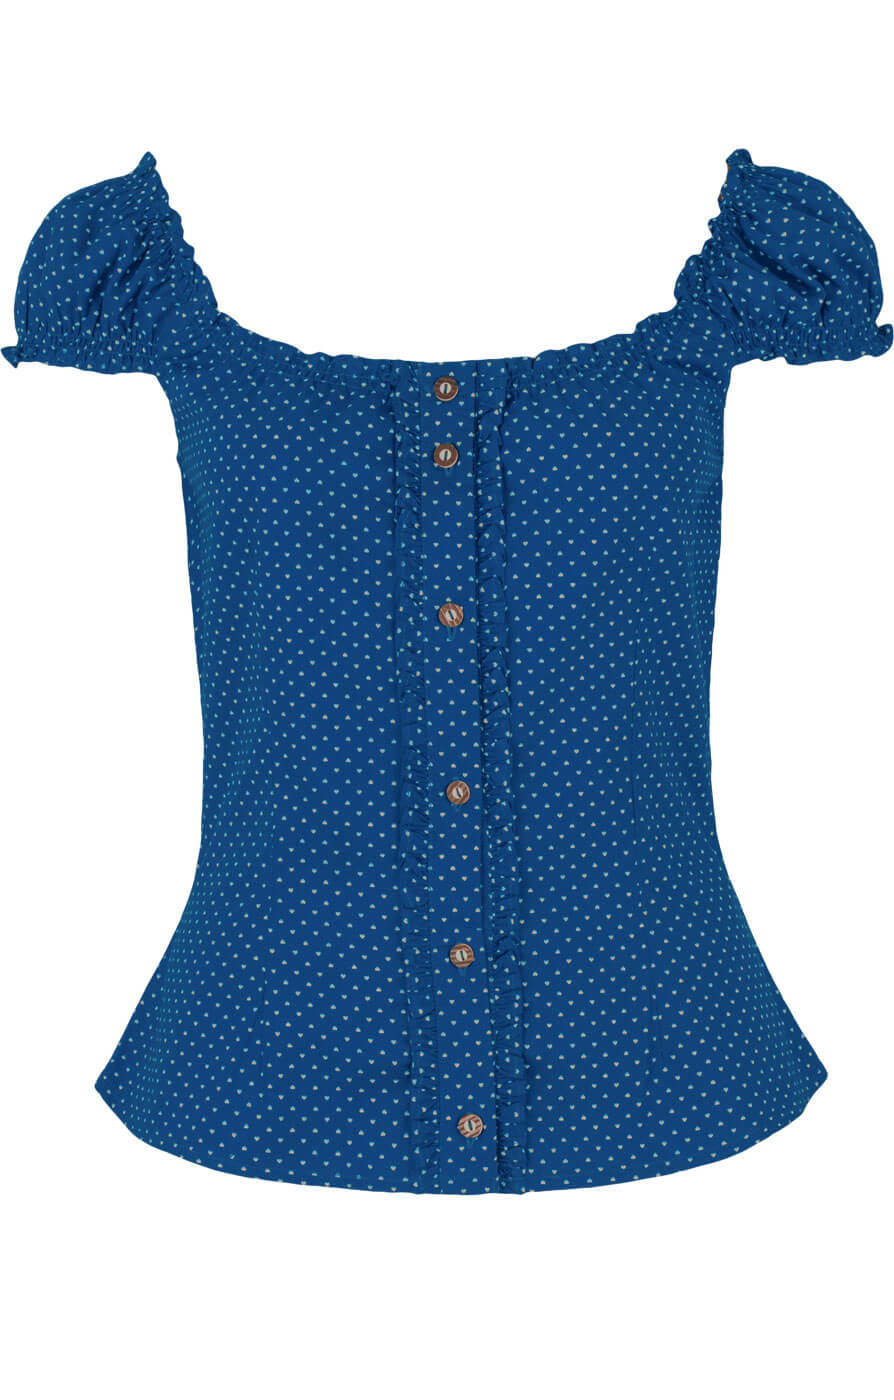 weitere Bilder von Trachten blouse Milena blue